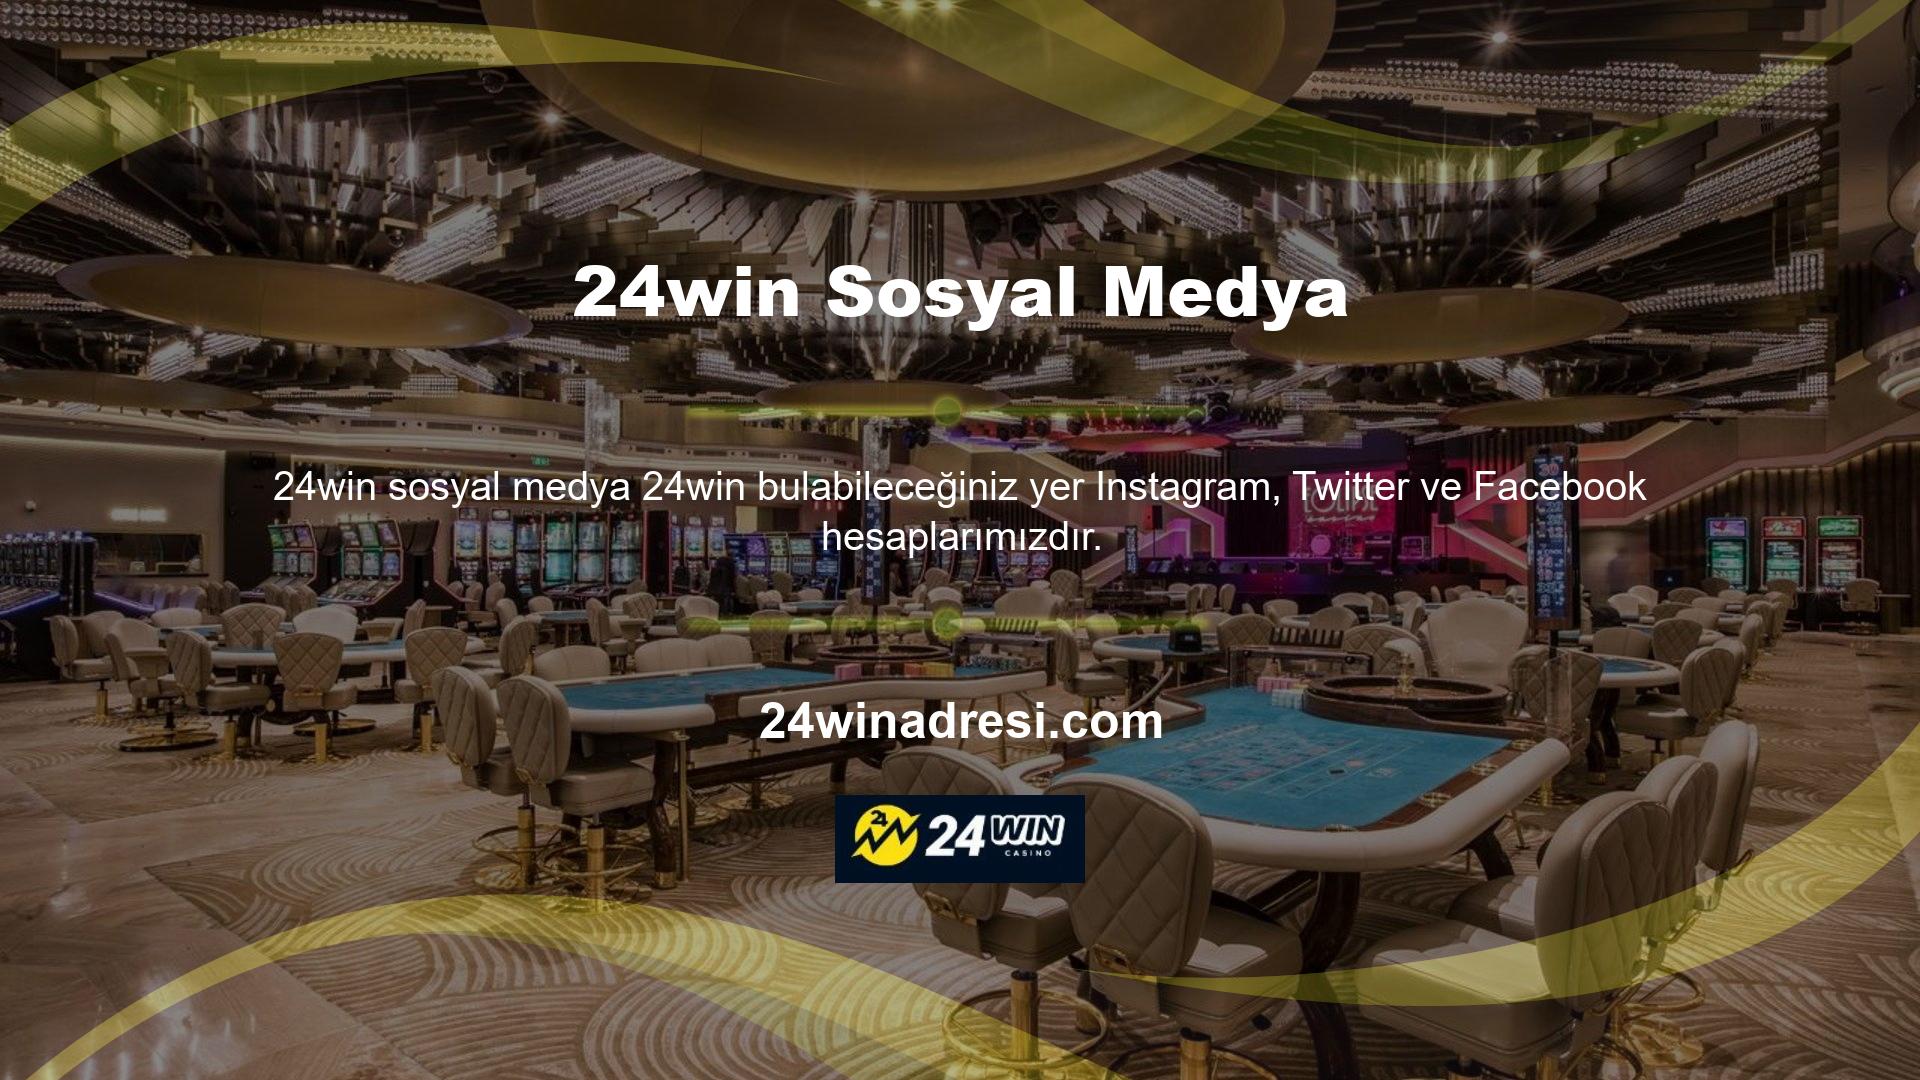 24win Bonuslarını nasıl tanımlarsınız? Bu sefer, bilenler için casino sitesi bonuslarına odaklanacağız